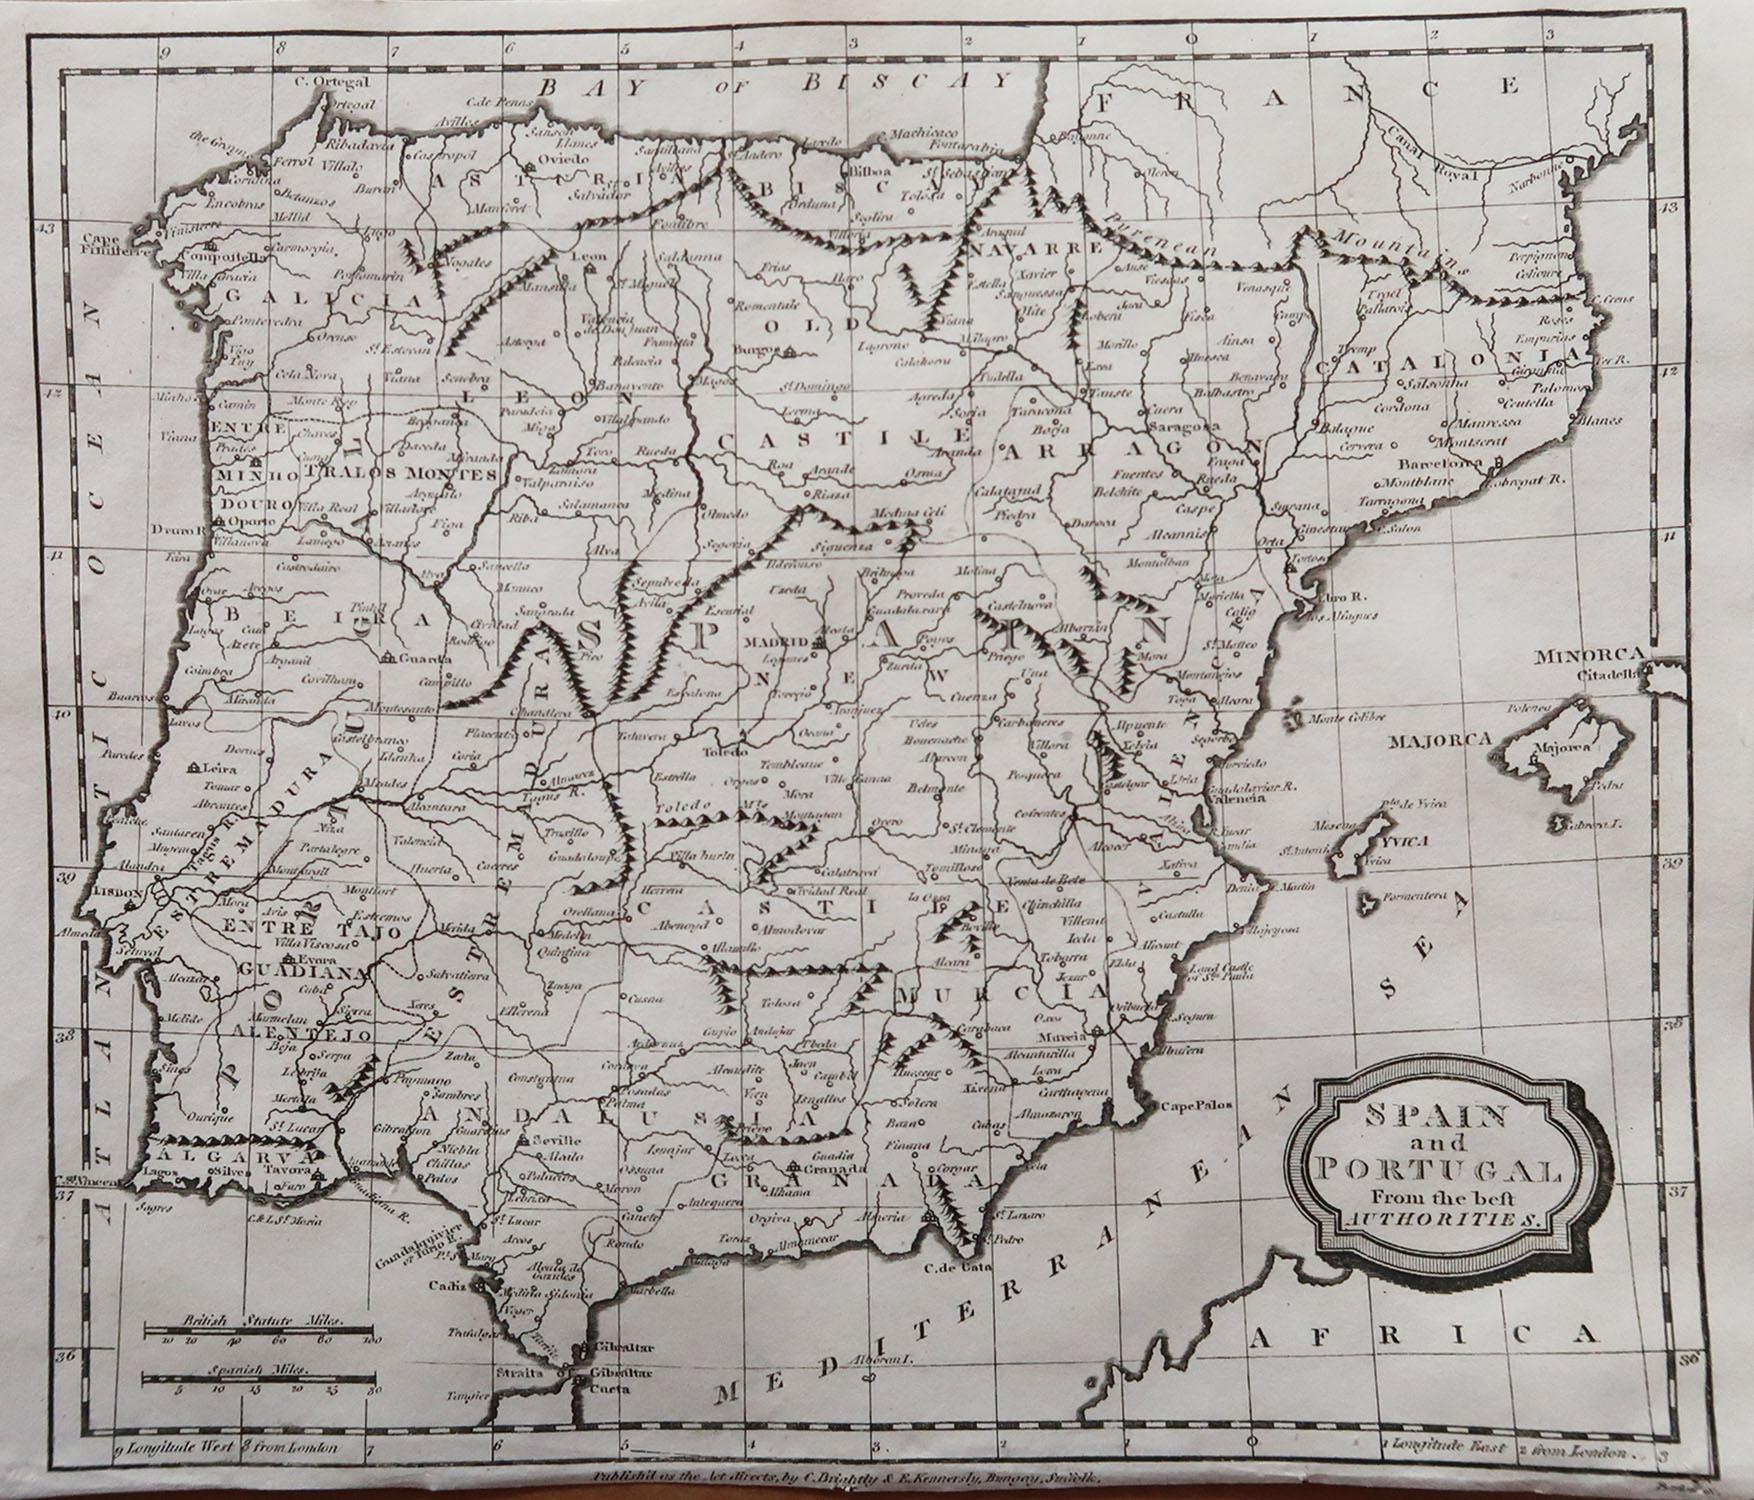 Grande carte de l'Espagne et du Portugal

Gravure sur cuivre de Barlow

Publié par Brightly & Kinnersly, Bungay, Suffolk. 1806

Non encadré.